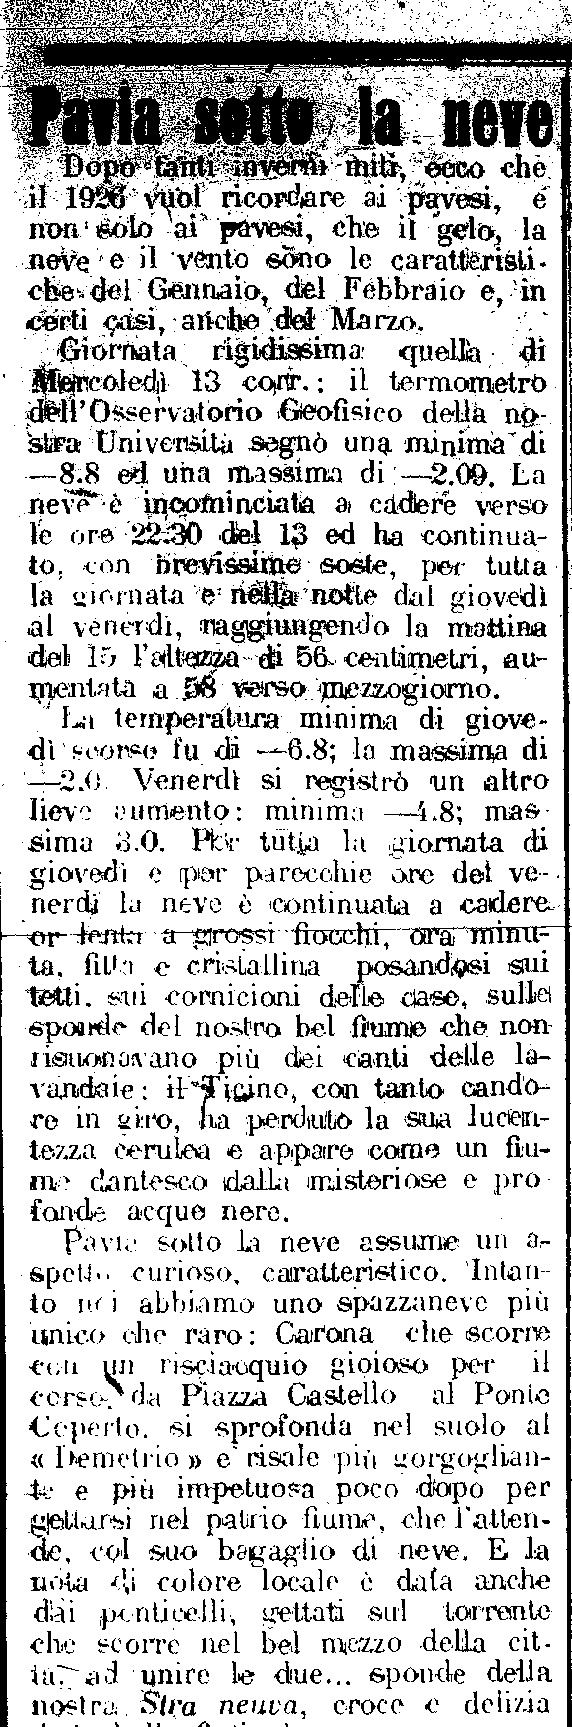 L'articolo de "La Provincia Pavese" del 17 Gennaio 1926